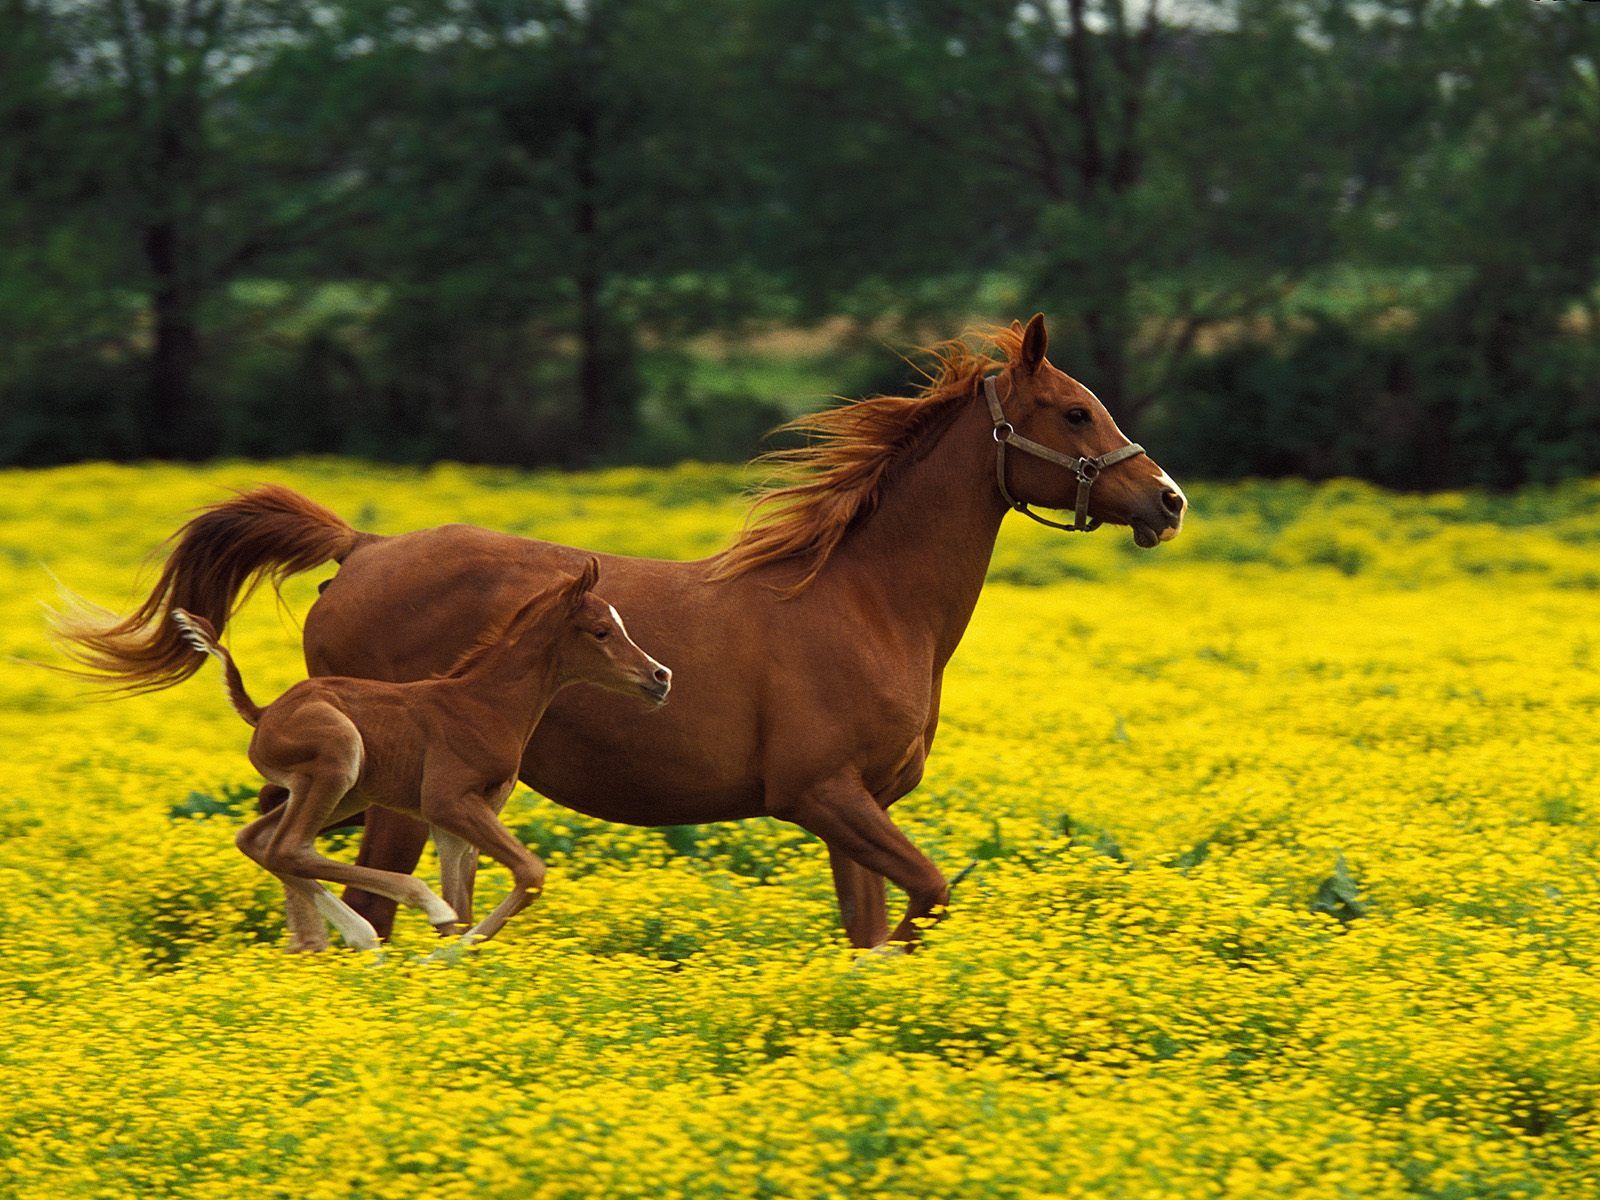 Foal Desktop Background. Foal Wallpaper, Horse Foal Background and Foal Desktop Background